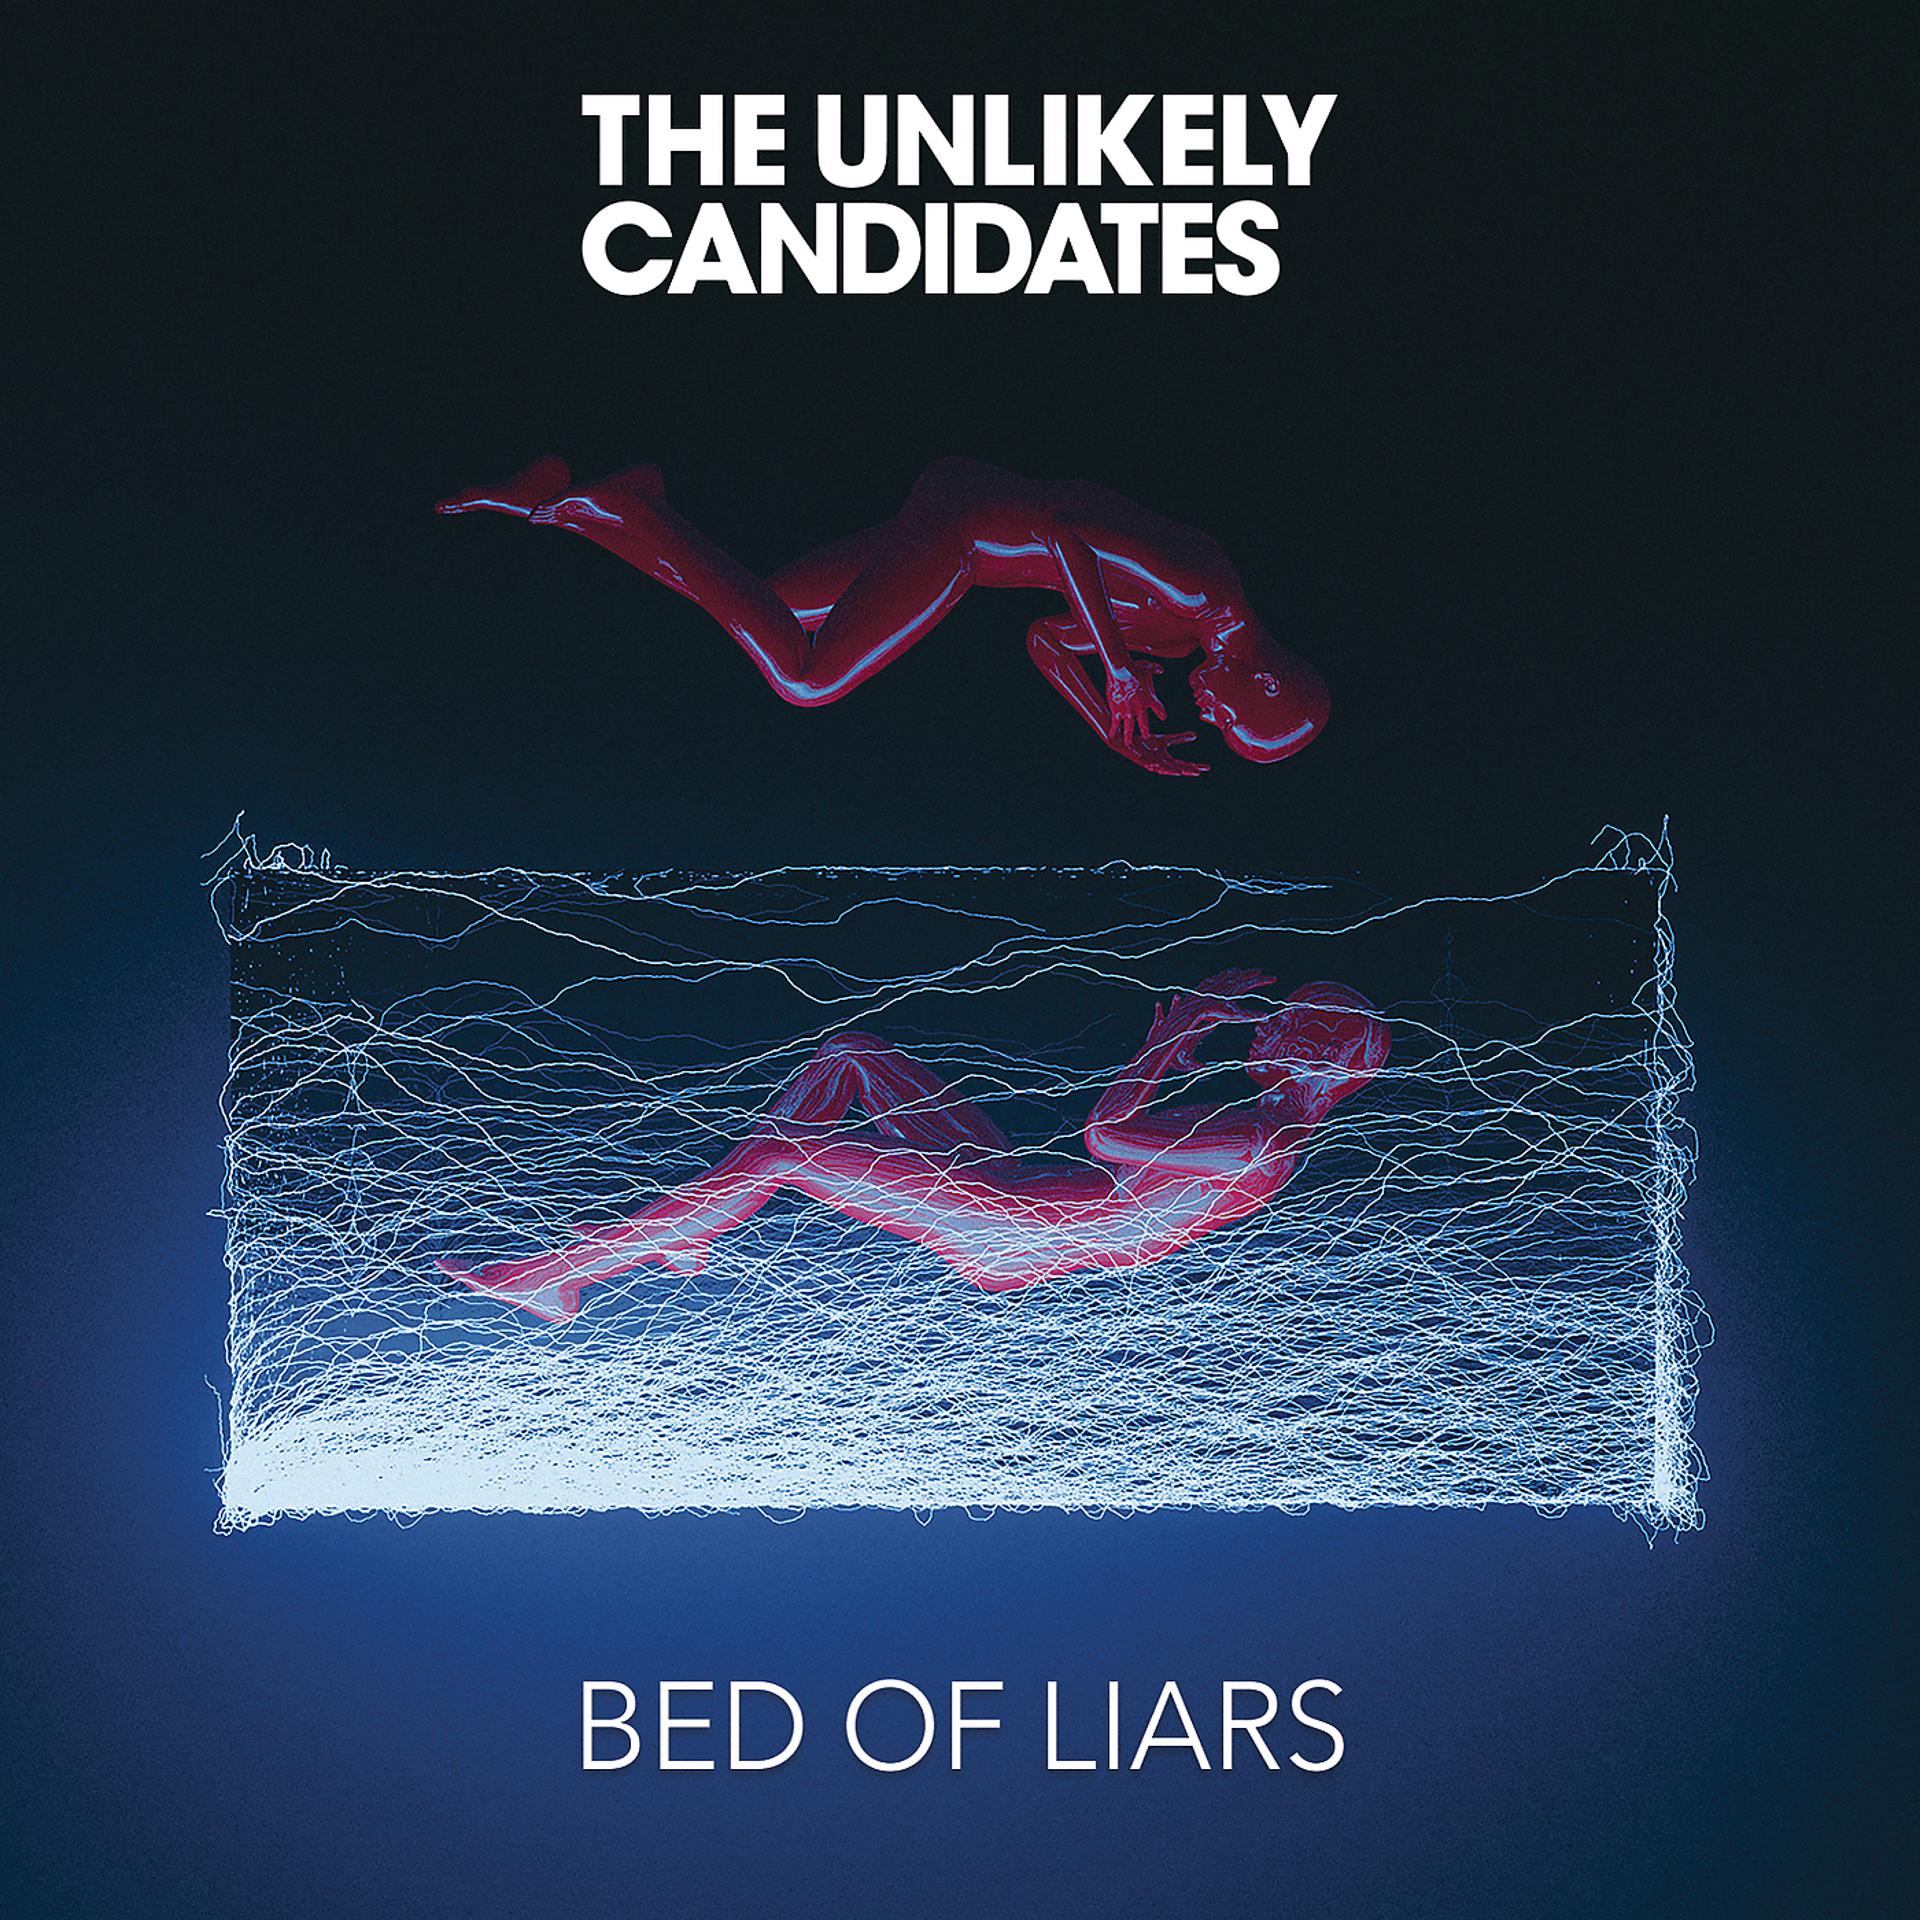 The unlikely candidates. The unlikely candidates violence. The unlikely candidates альбомы. The unlikely candidates Band.